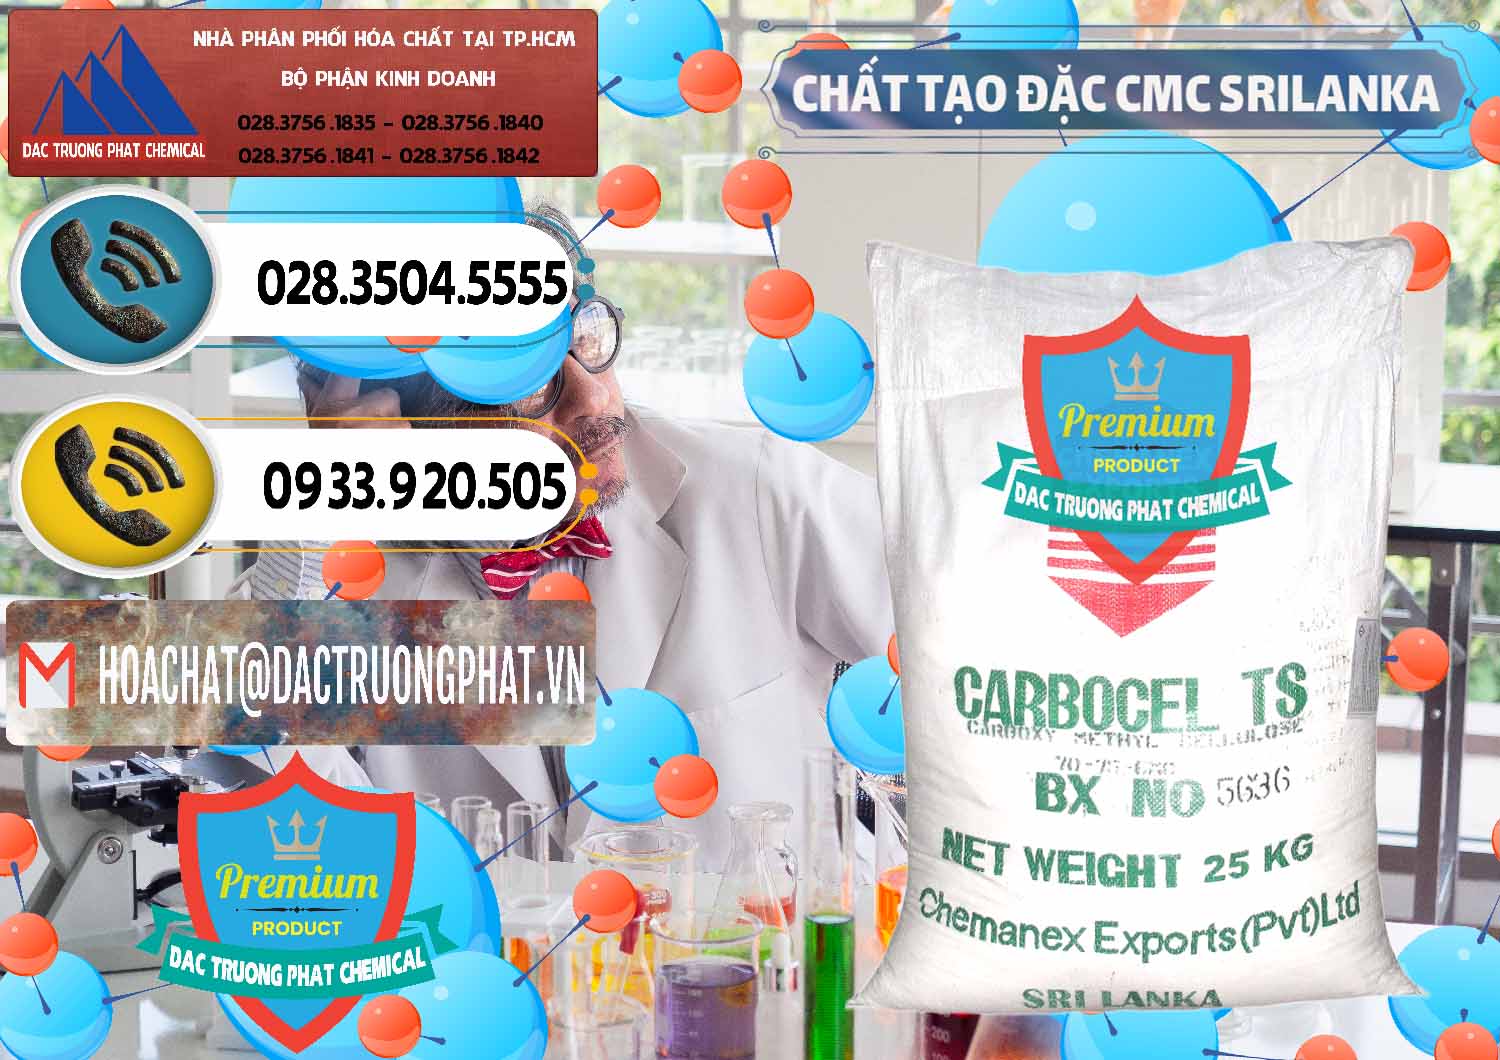 Chuyên kinh doanh & bán Chất Tạo Đặc CMC - Carboxyl Methyl Cellulose Srilanka - 0045 - Nhà cung cấp - nhập khẩu hóa chất tại TP.HCM - hoachatdetnhuom.vn